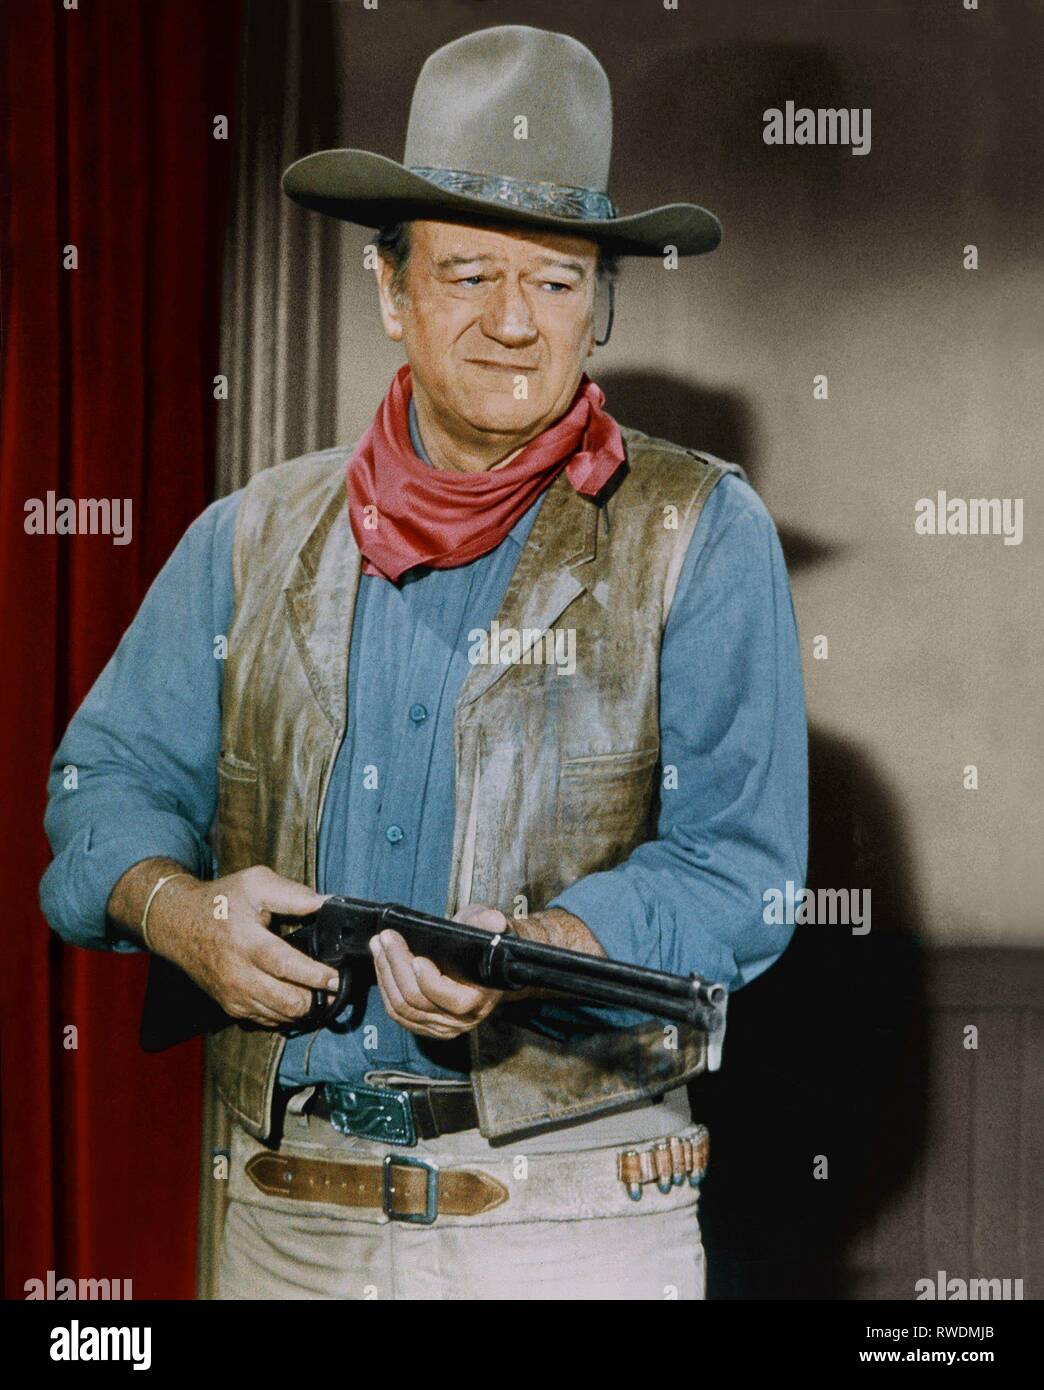 John wayne cowboy immagini e fotografie stock ad alta risoluzione - Alamy